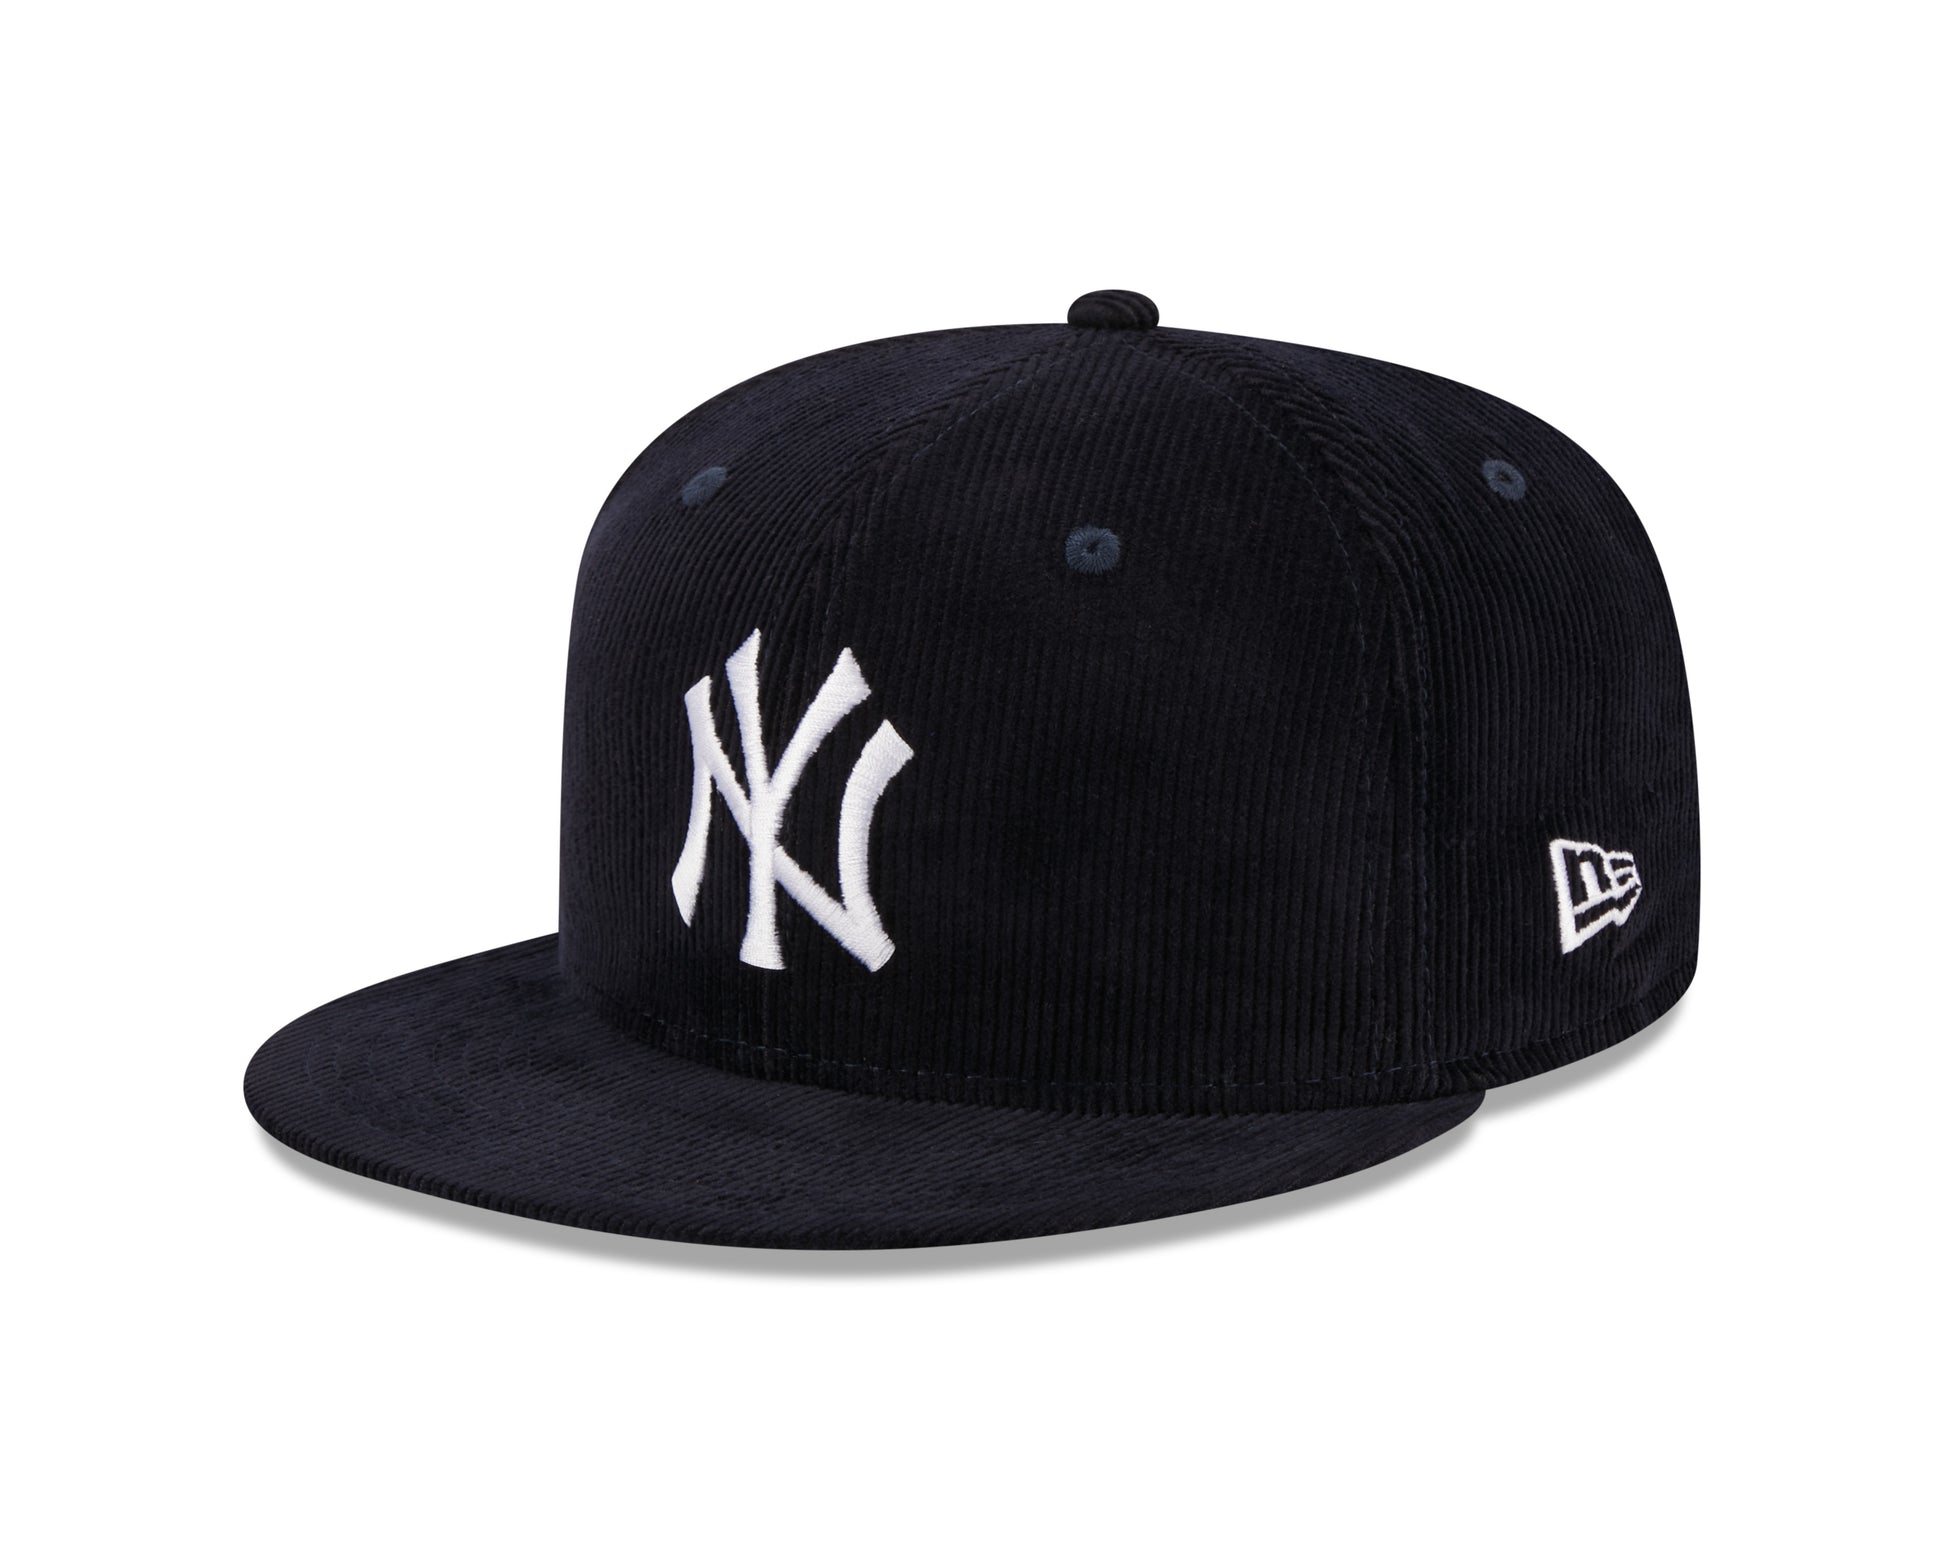 New Era - New York Yankees Throwback Cord - Navy - Headz Up 